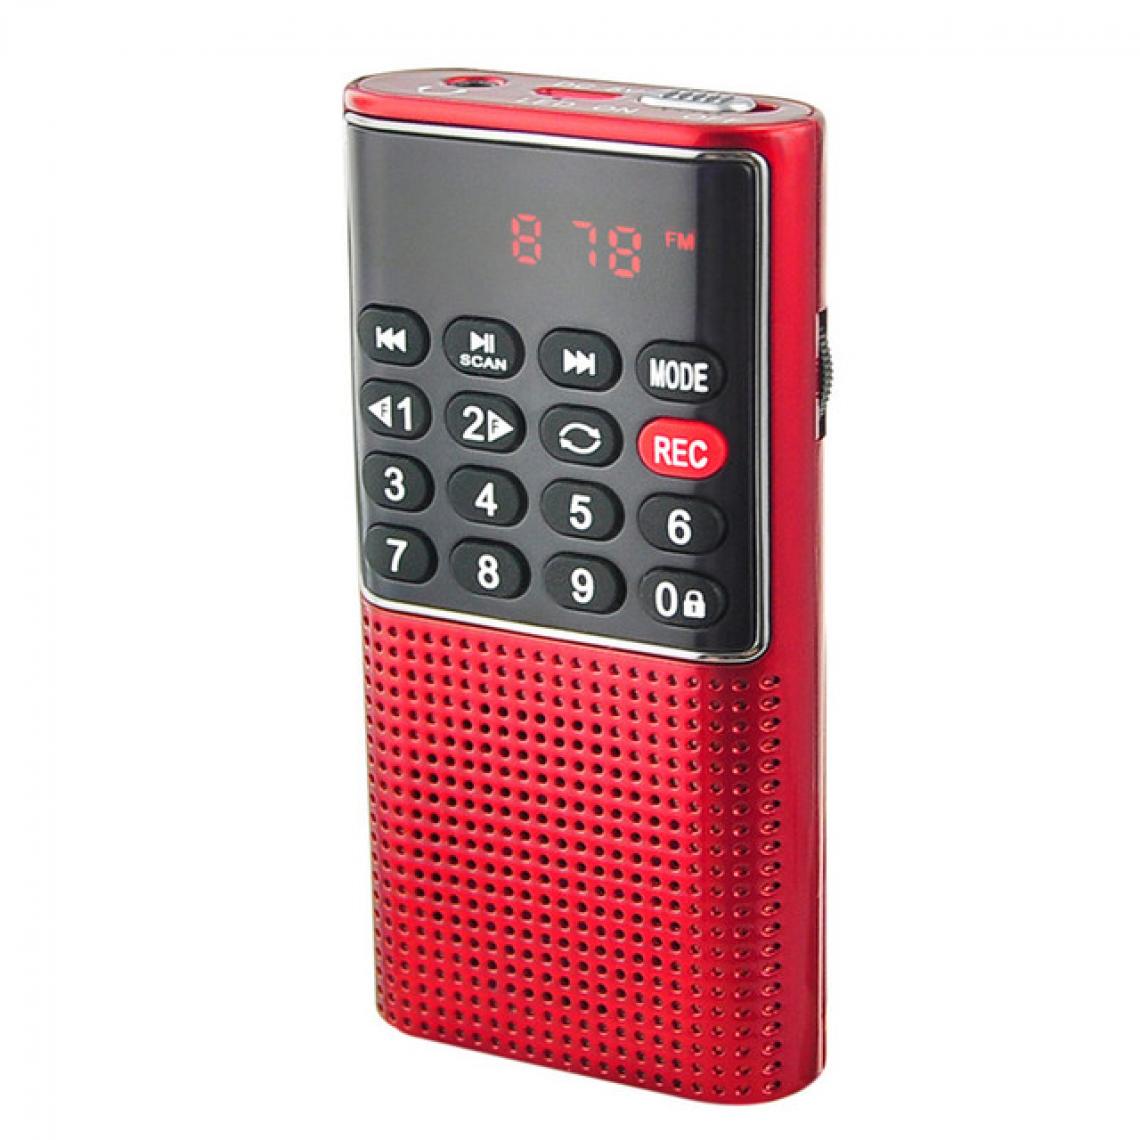 Universal - Radio portable portable numérique FM USB TF lecteur MP3 récepteur radio DC 5V 0.5A haut-parleur avec magnétophone - Radio